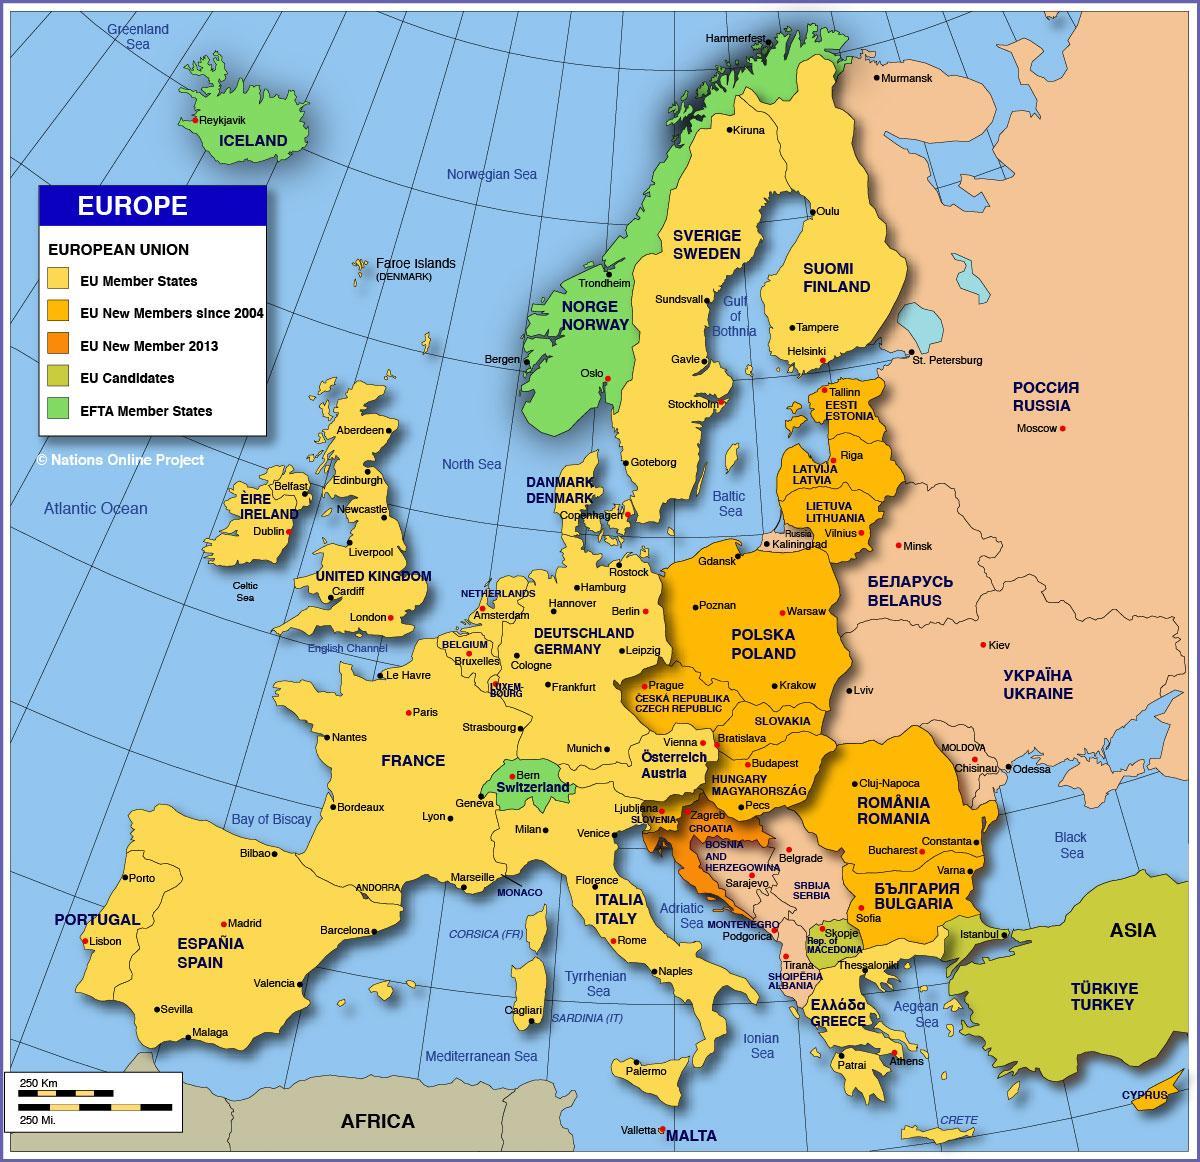 Mosca sulla mappa dell'europa